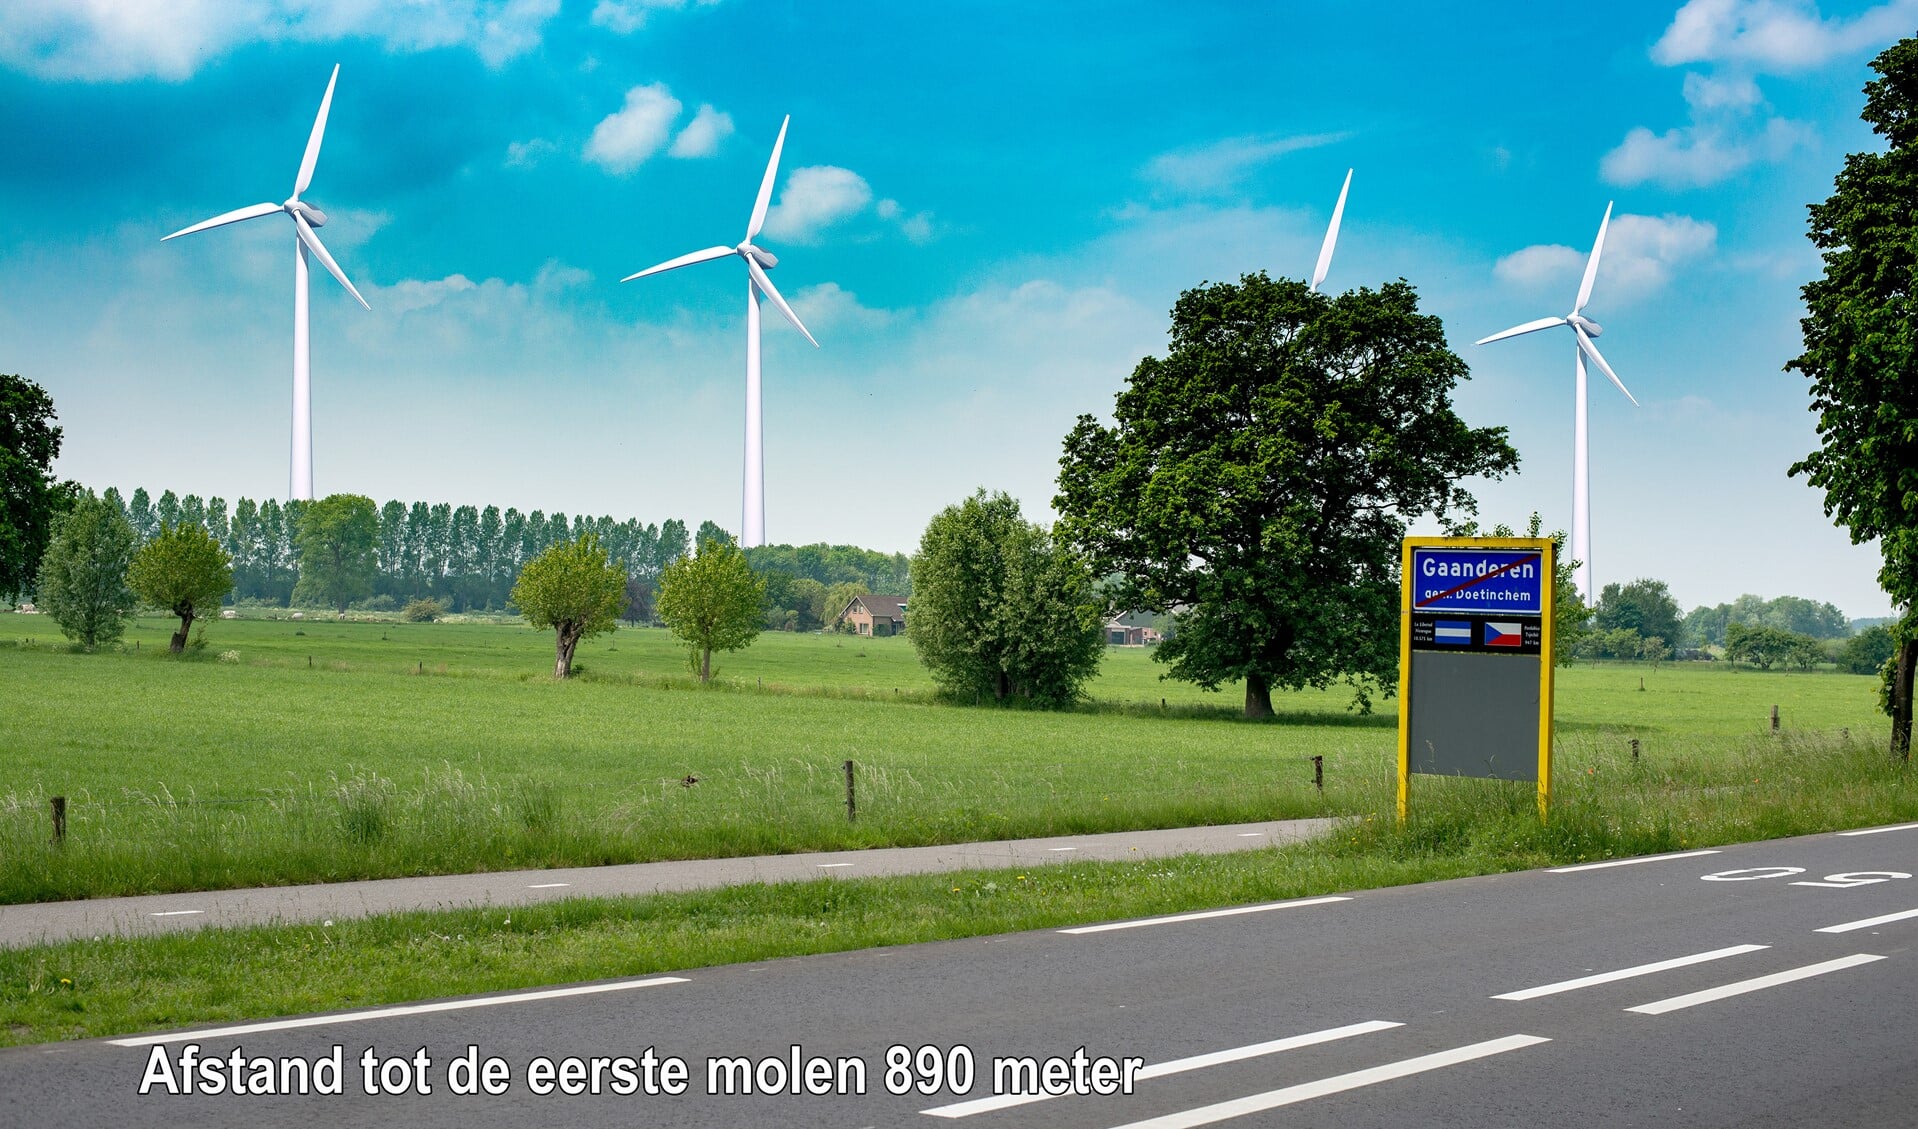 Een impressie van hoe de windmolens het beeld van het landschap zouden beïnvloeden. Foto: PR